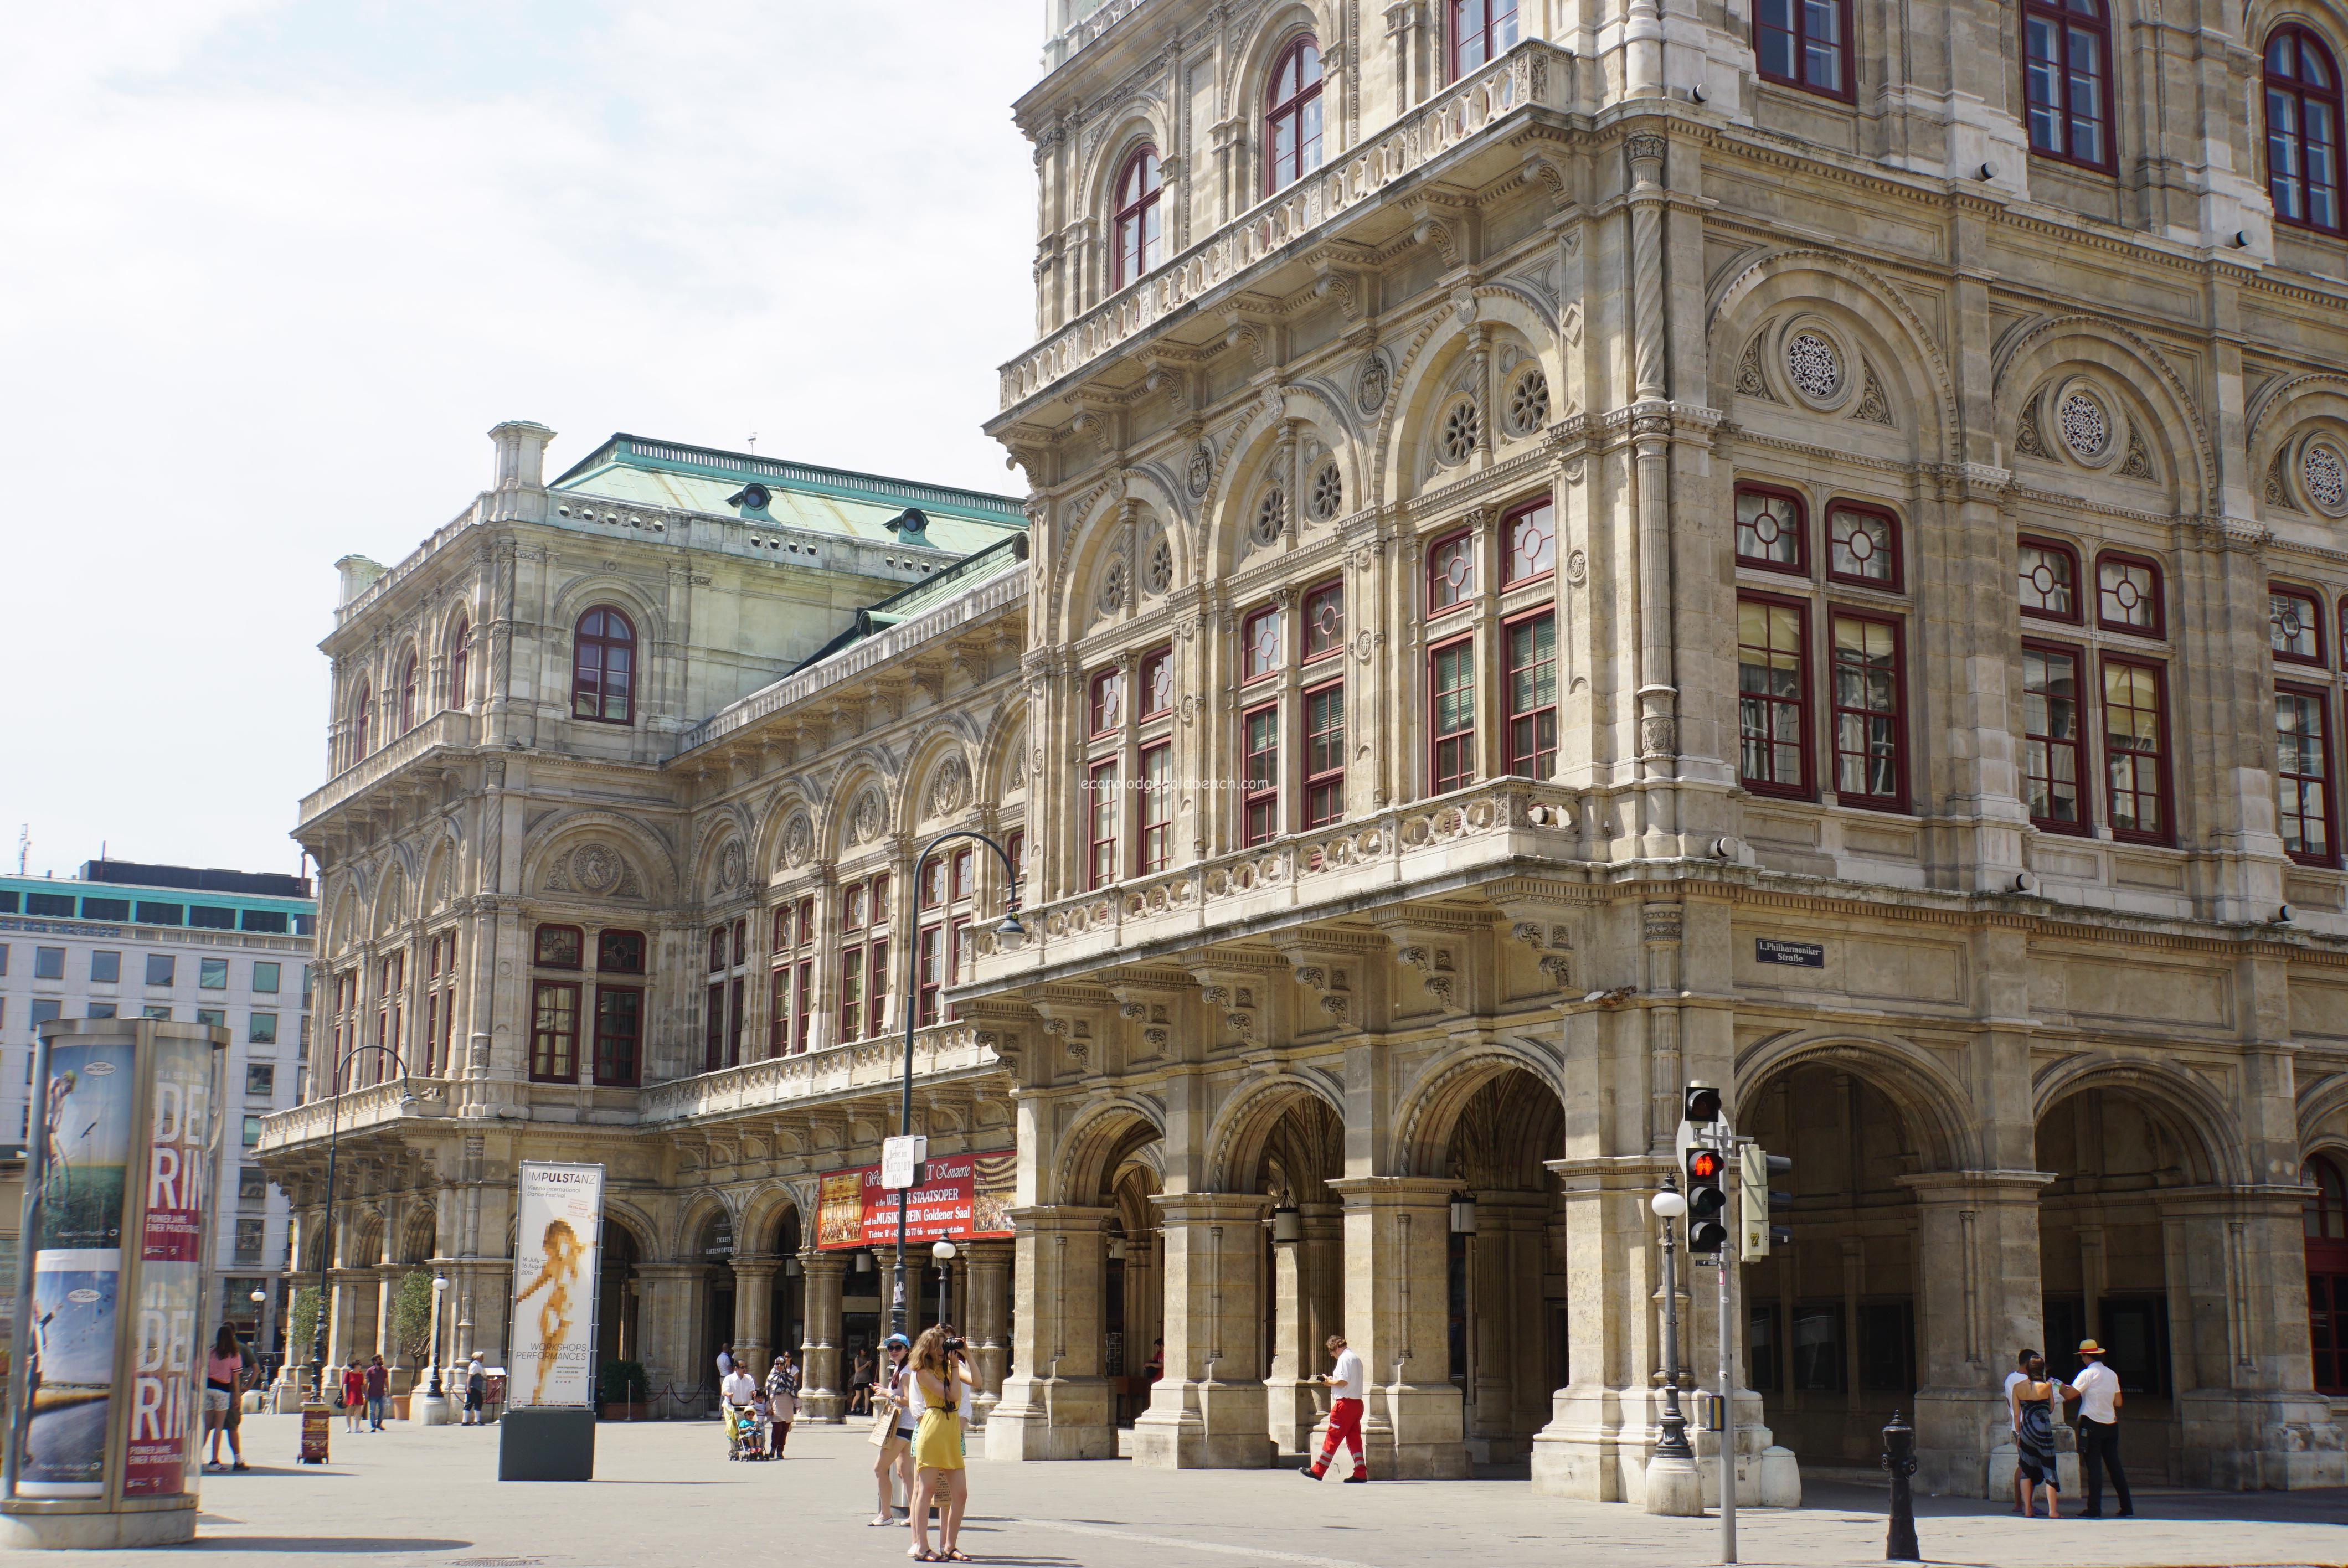 ウィーン国立オペラ座 シュテファン大聖堂など 海外 国内 気楽に世界周遊の旅と海外情報